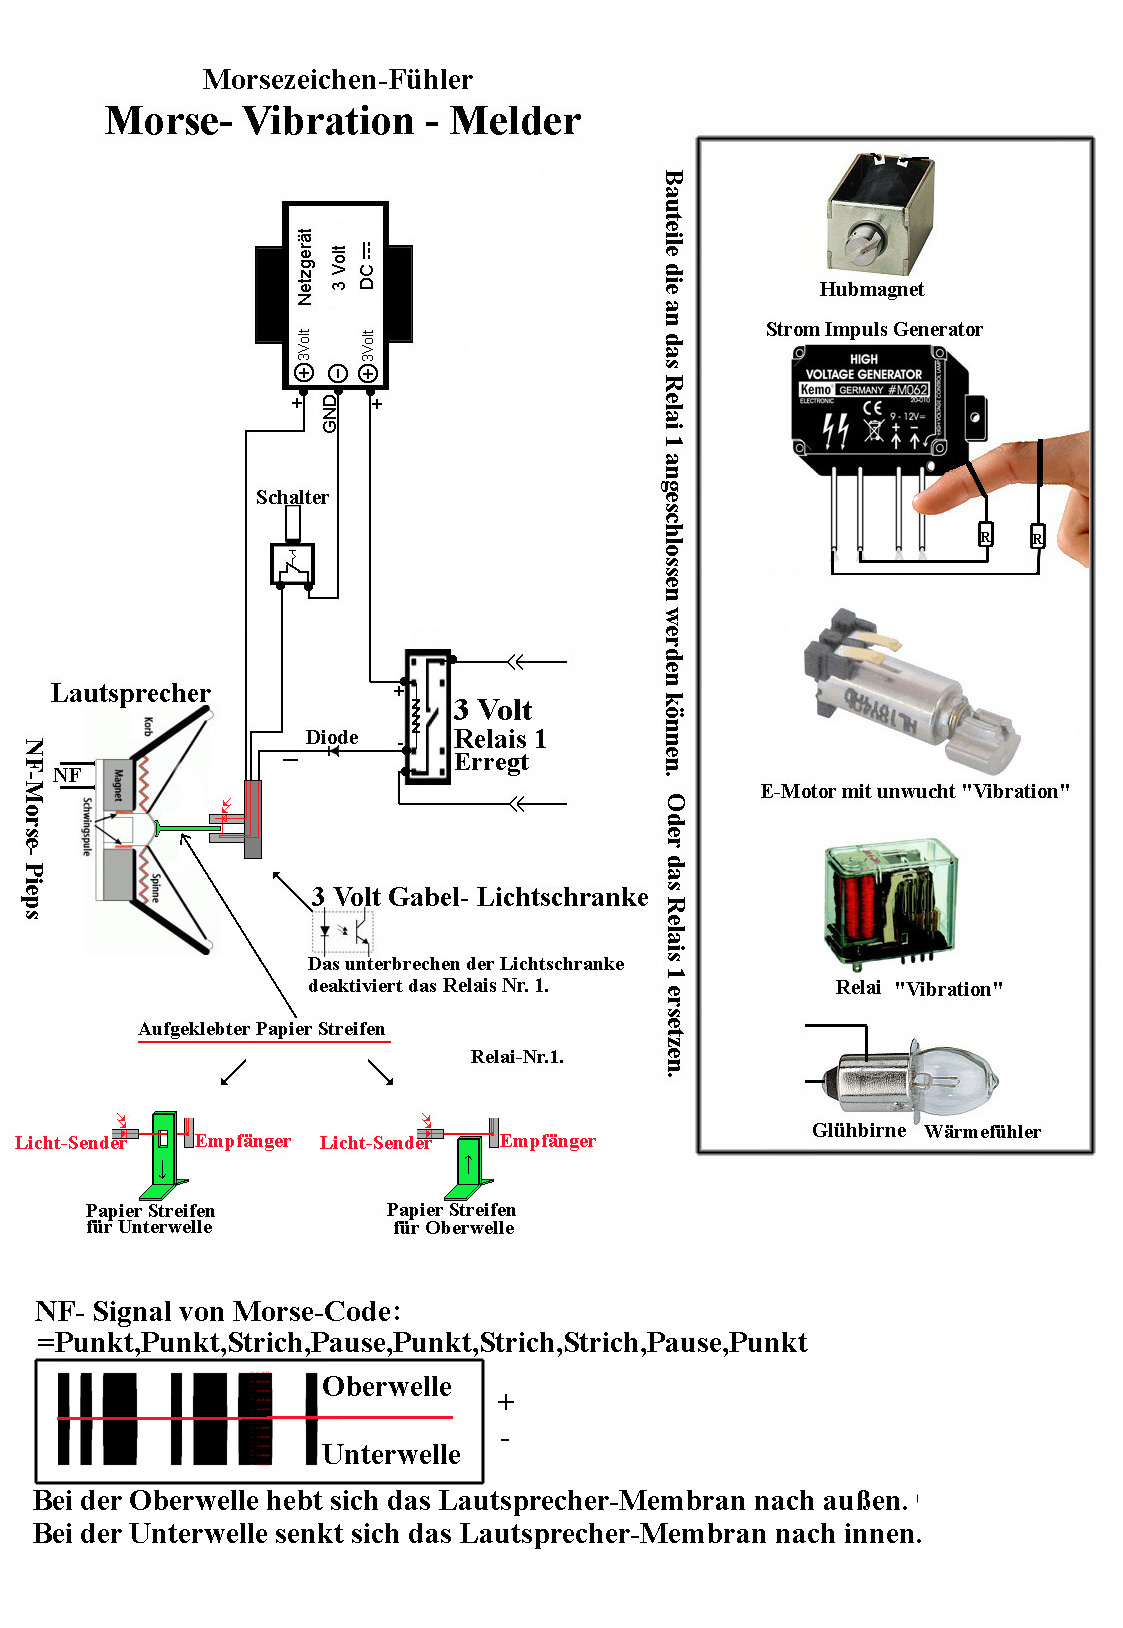 Morse-Vibration-Melder.JPG (371080 Byte)